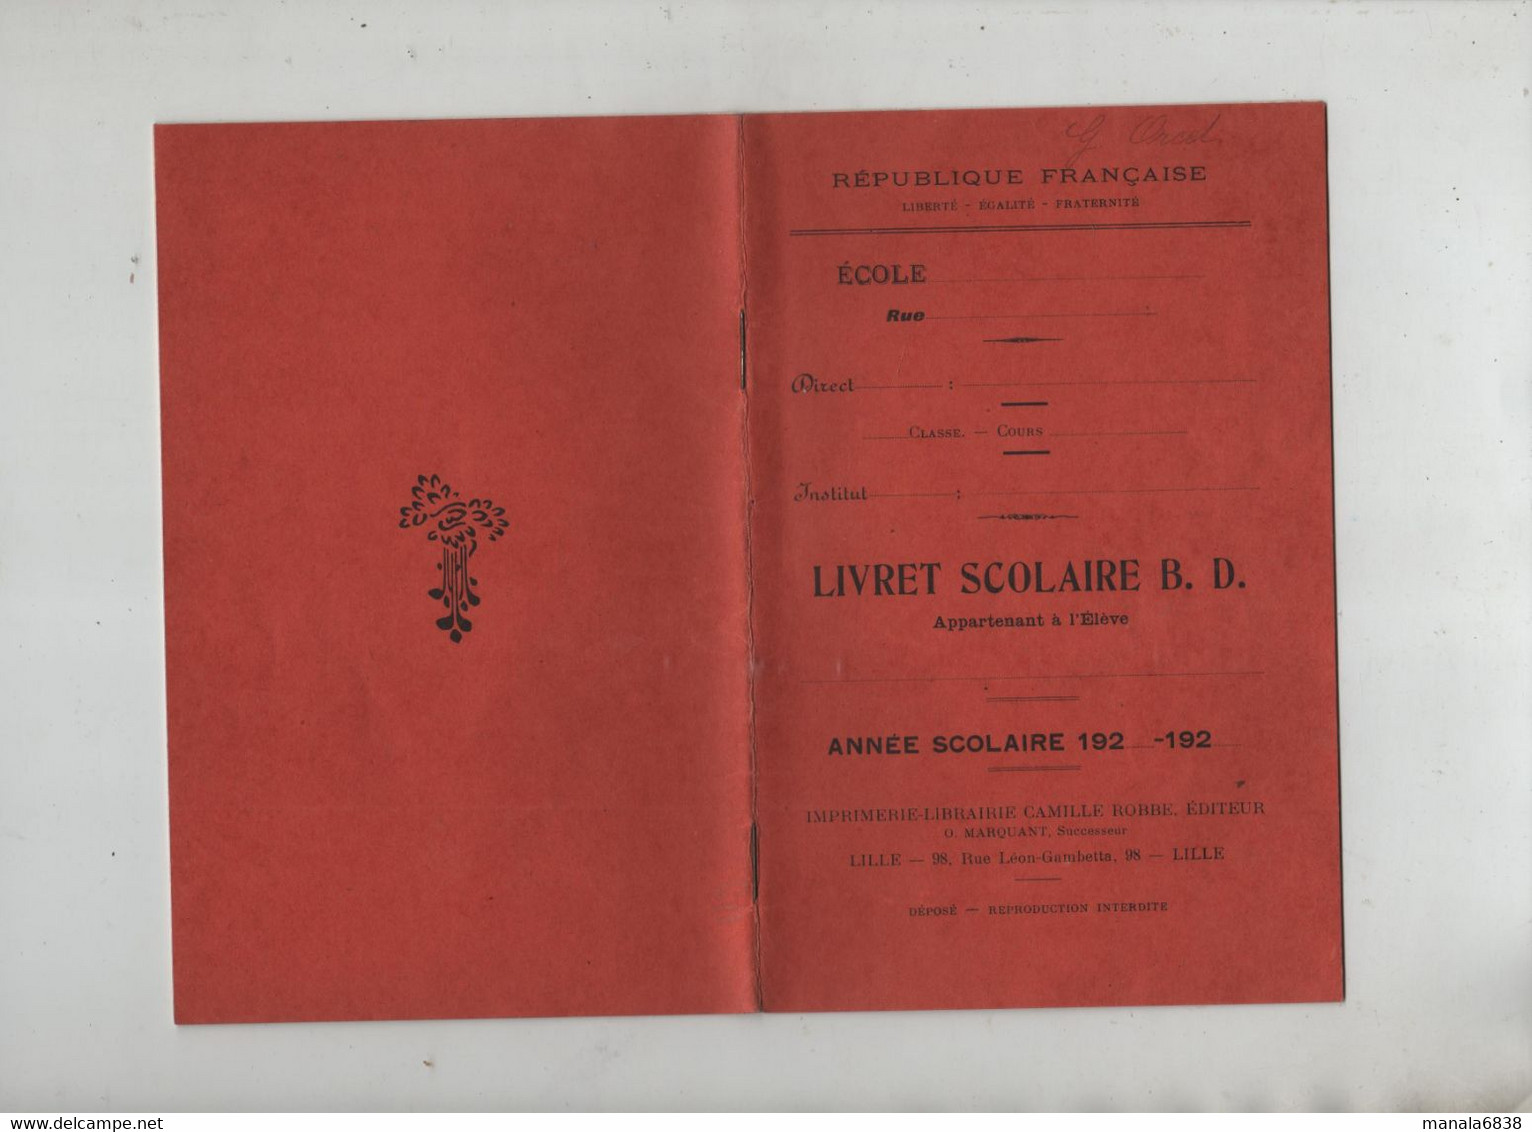 Livret Scolaire Orcel Orcet Gisèle 1929  Institutrice Loonis Villefranche Sur Saône - Diplome Und Schulzeugnisse